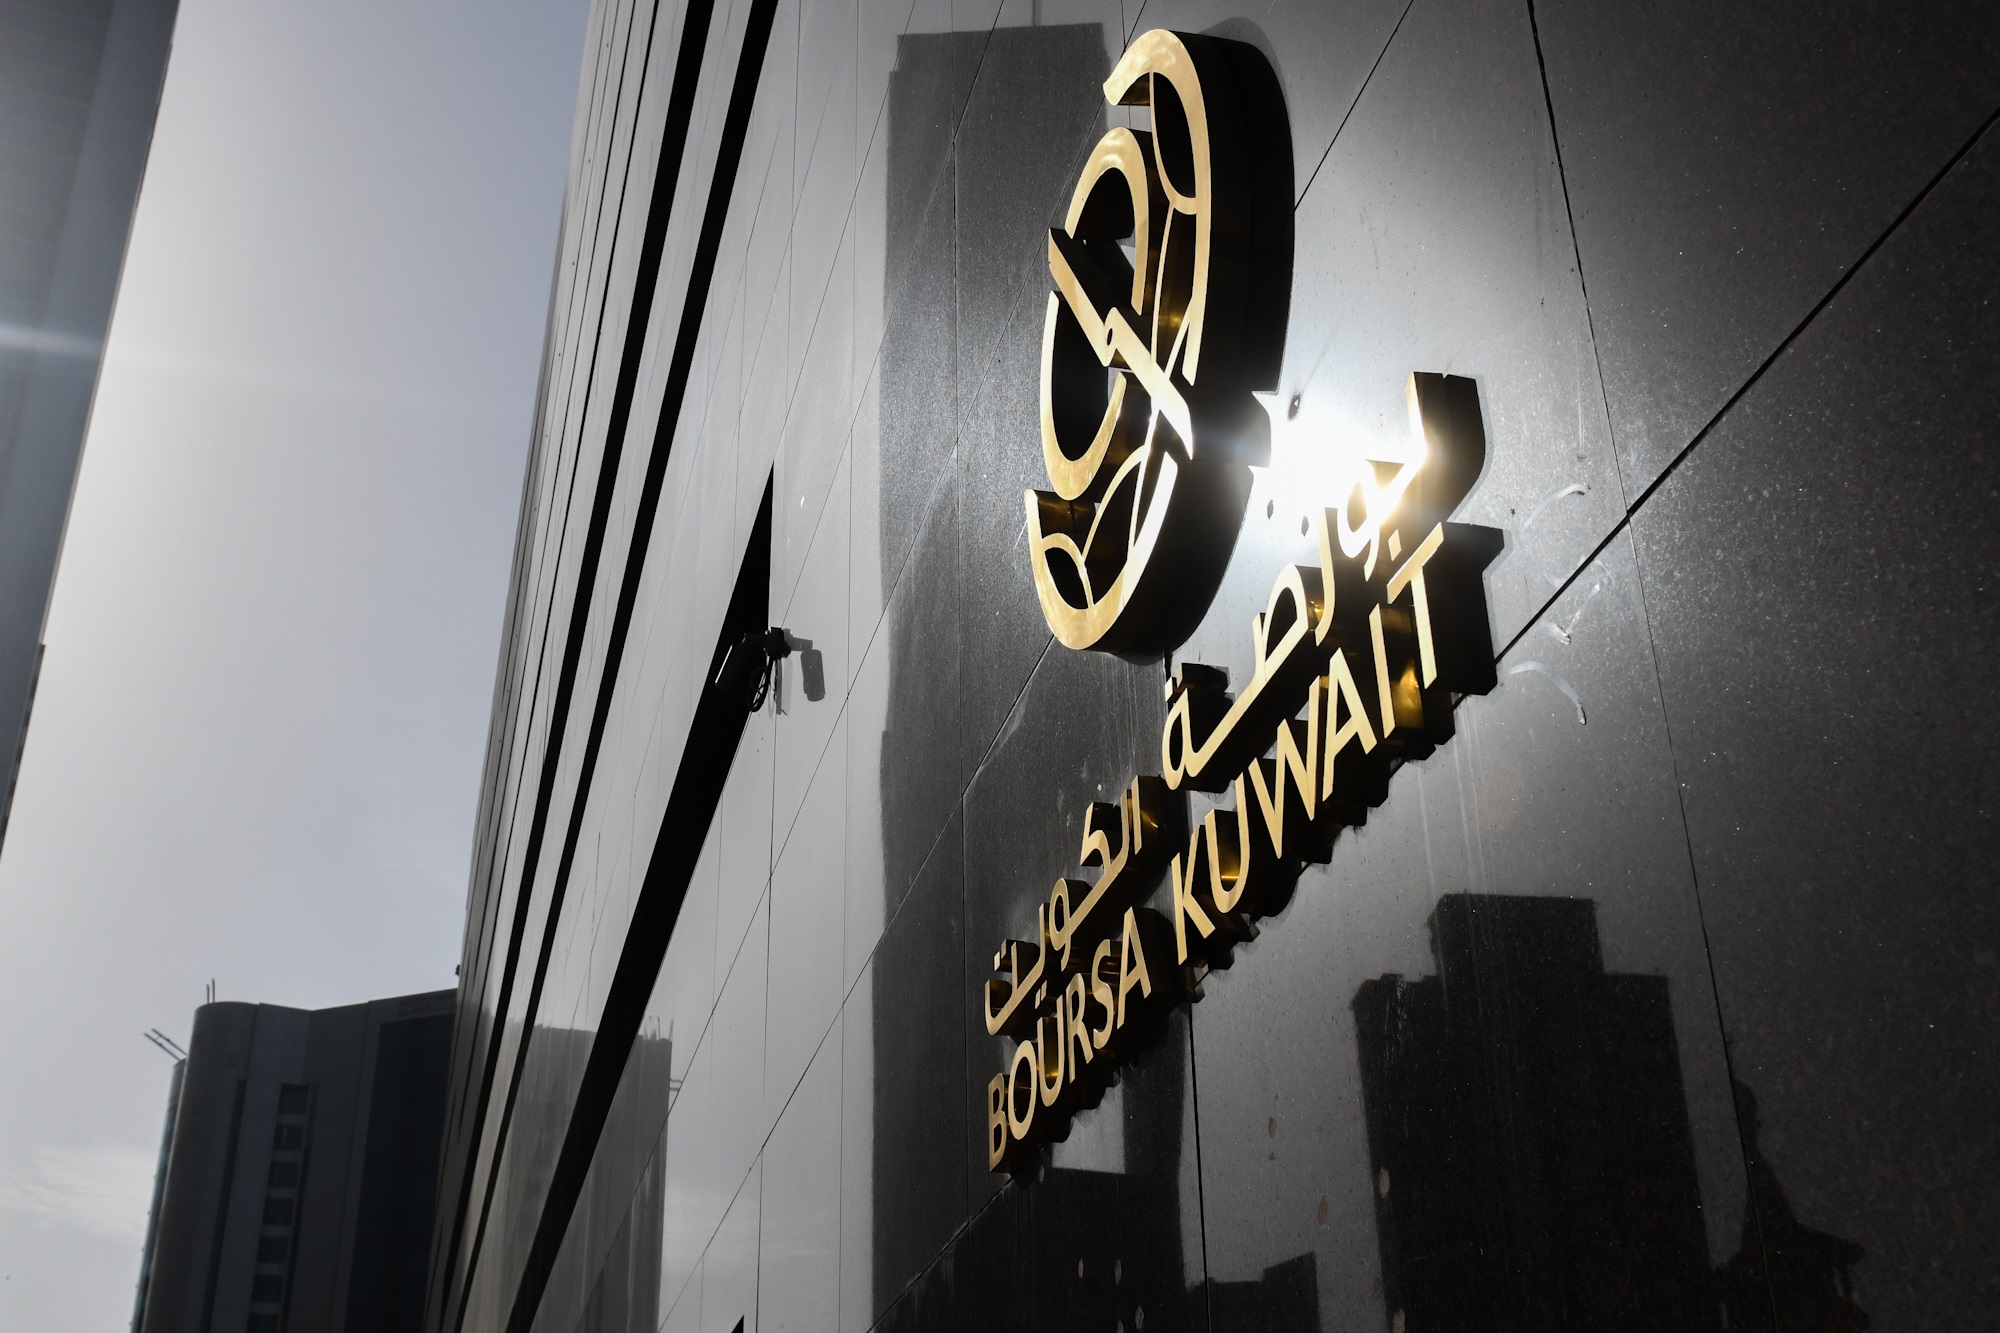 بورصة الكويت تغلق تعاملاتها على ارتفاع مؤشرها العام 3ر108 نقاط ليبلغ 75ر7246 بنسبة 5ر1 في المئة                                                                                                                                                           